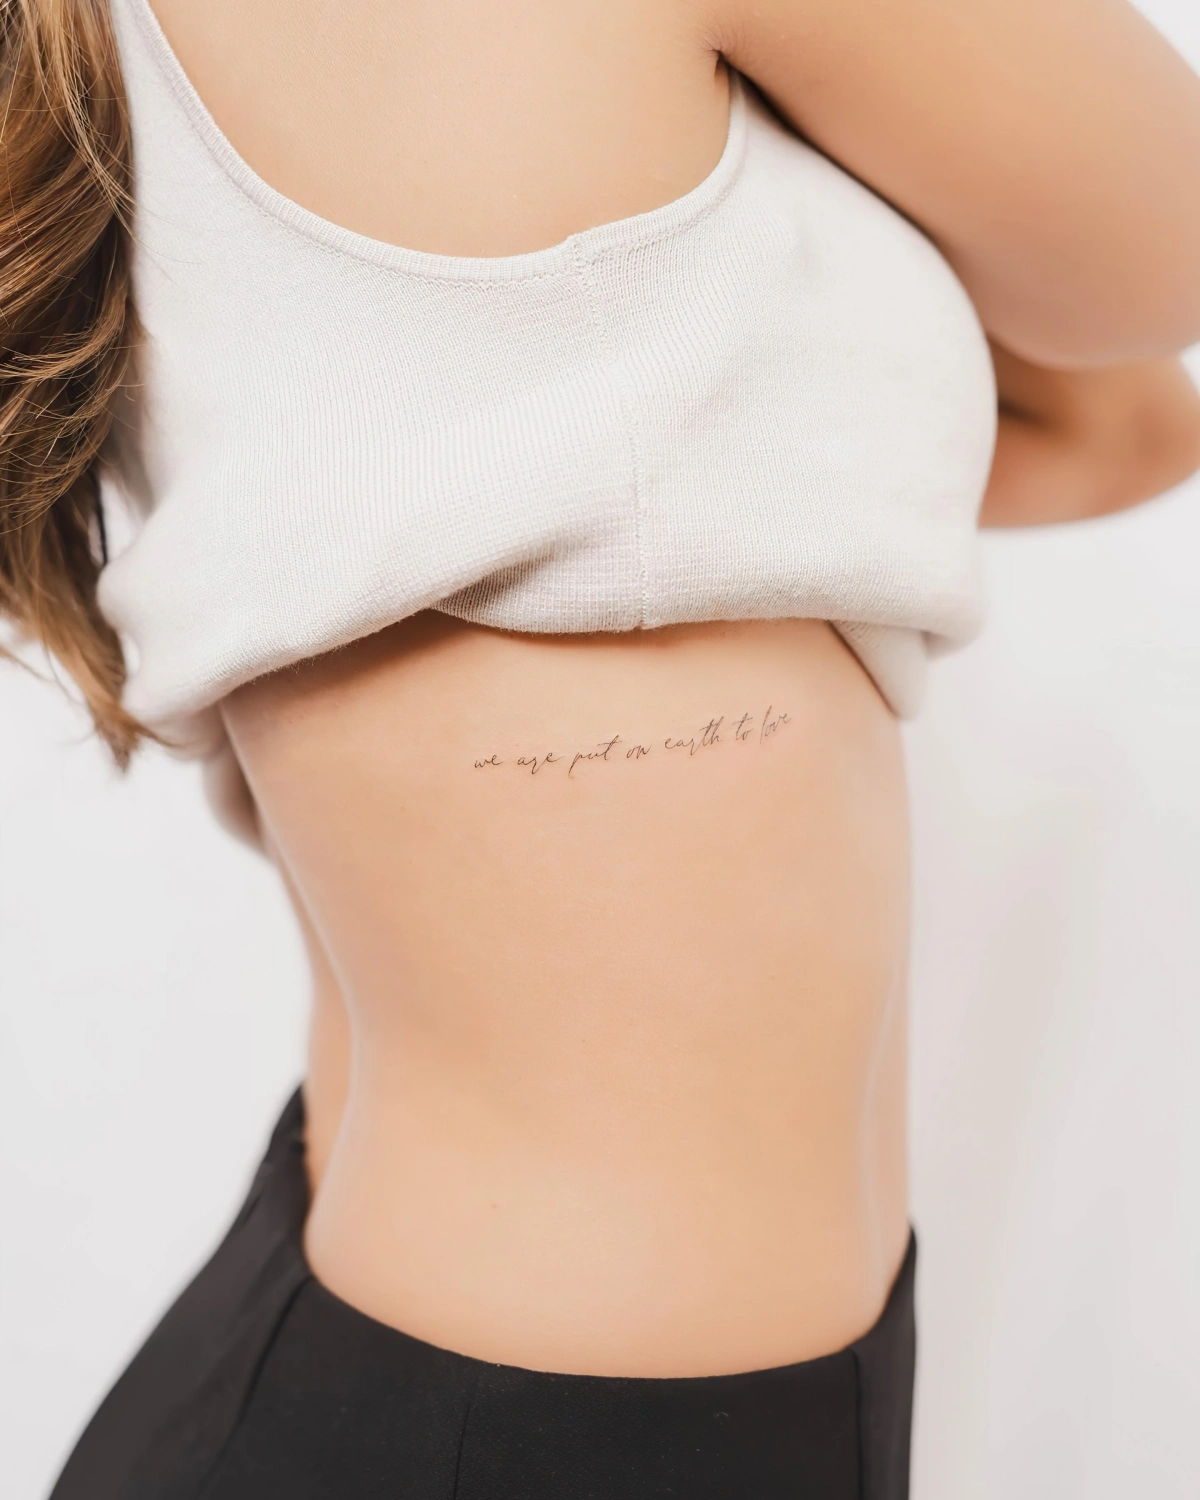 art corporel tatouage discret femme sur le cote lettres mots